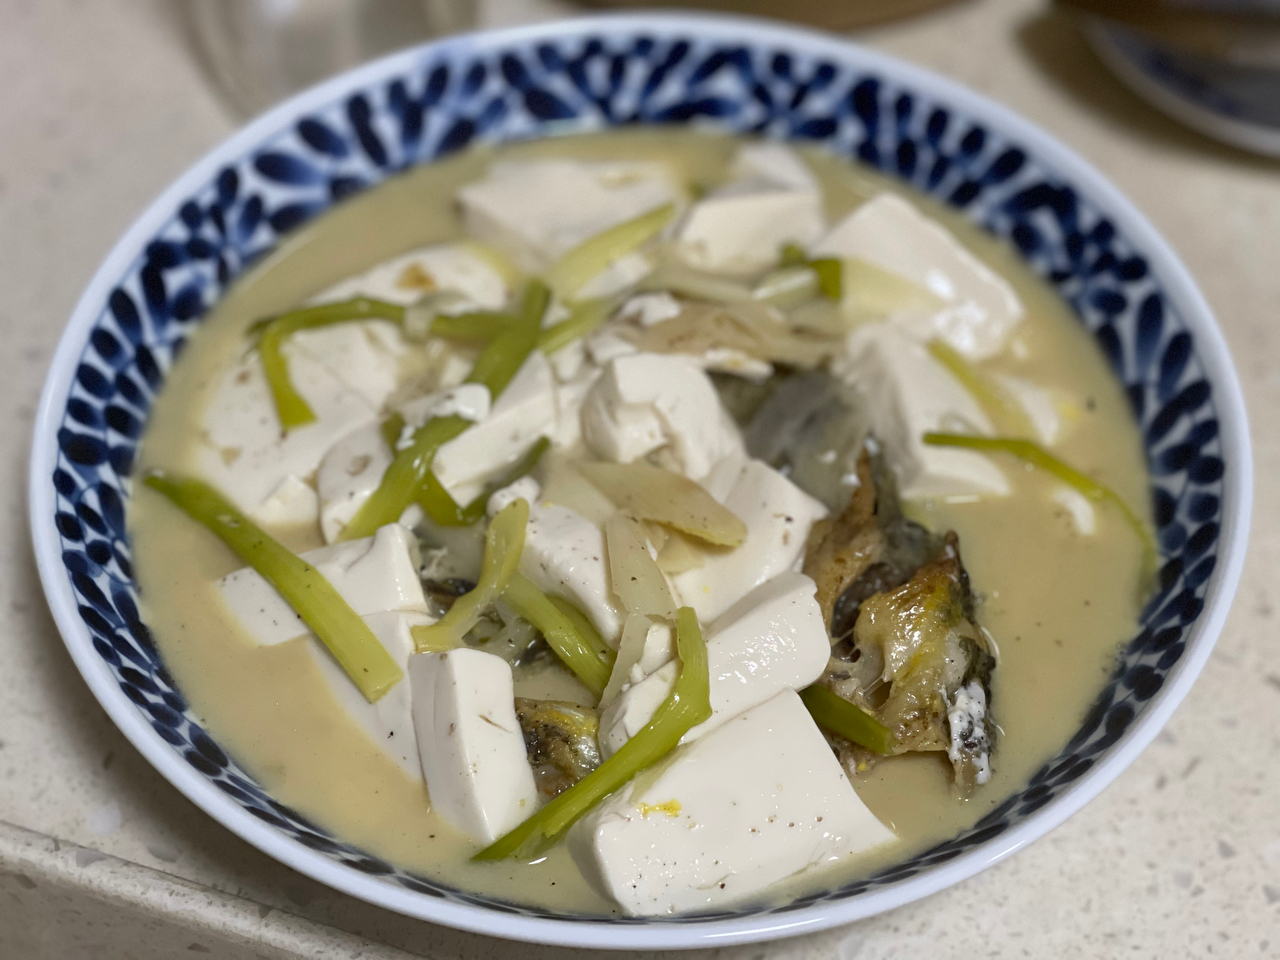 昂刺鱼豆腐汤（黄辣丁）